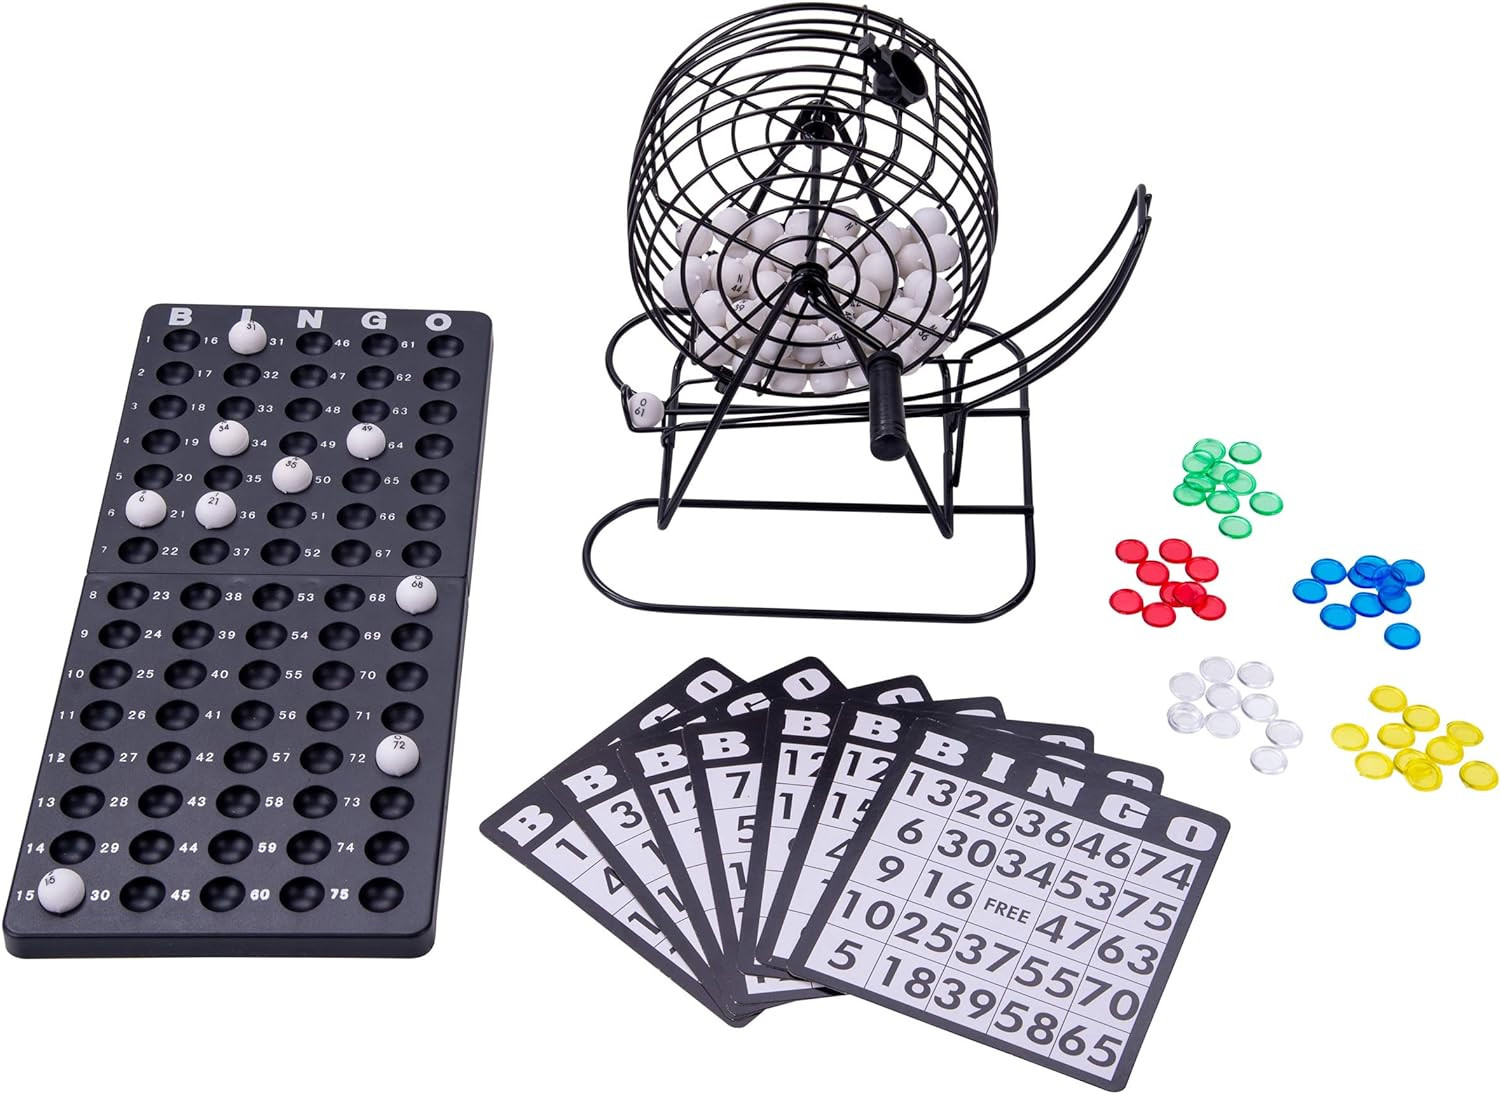 Complete bingo Set with bingo cage 75 ball bingo